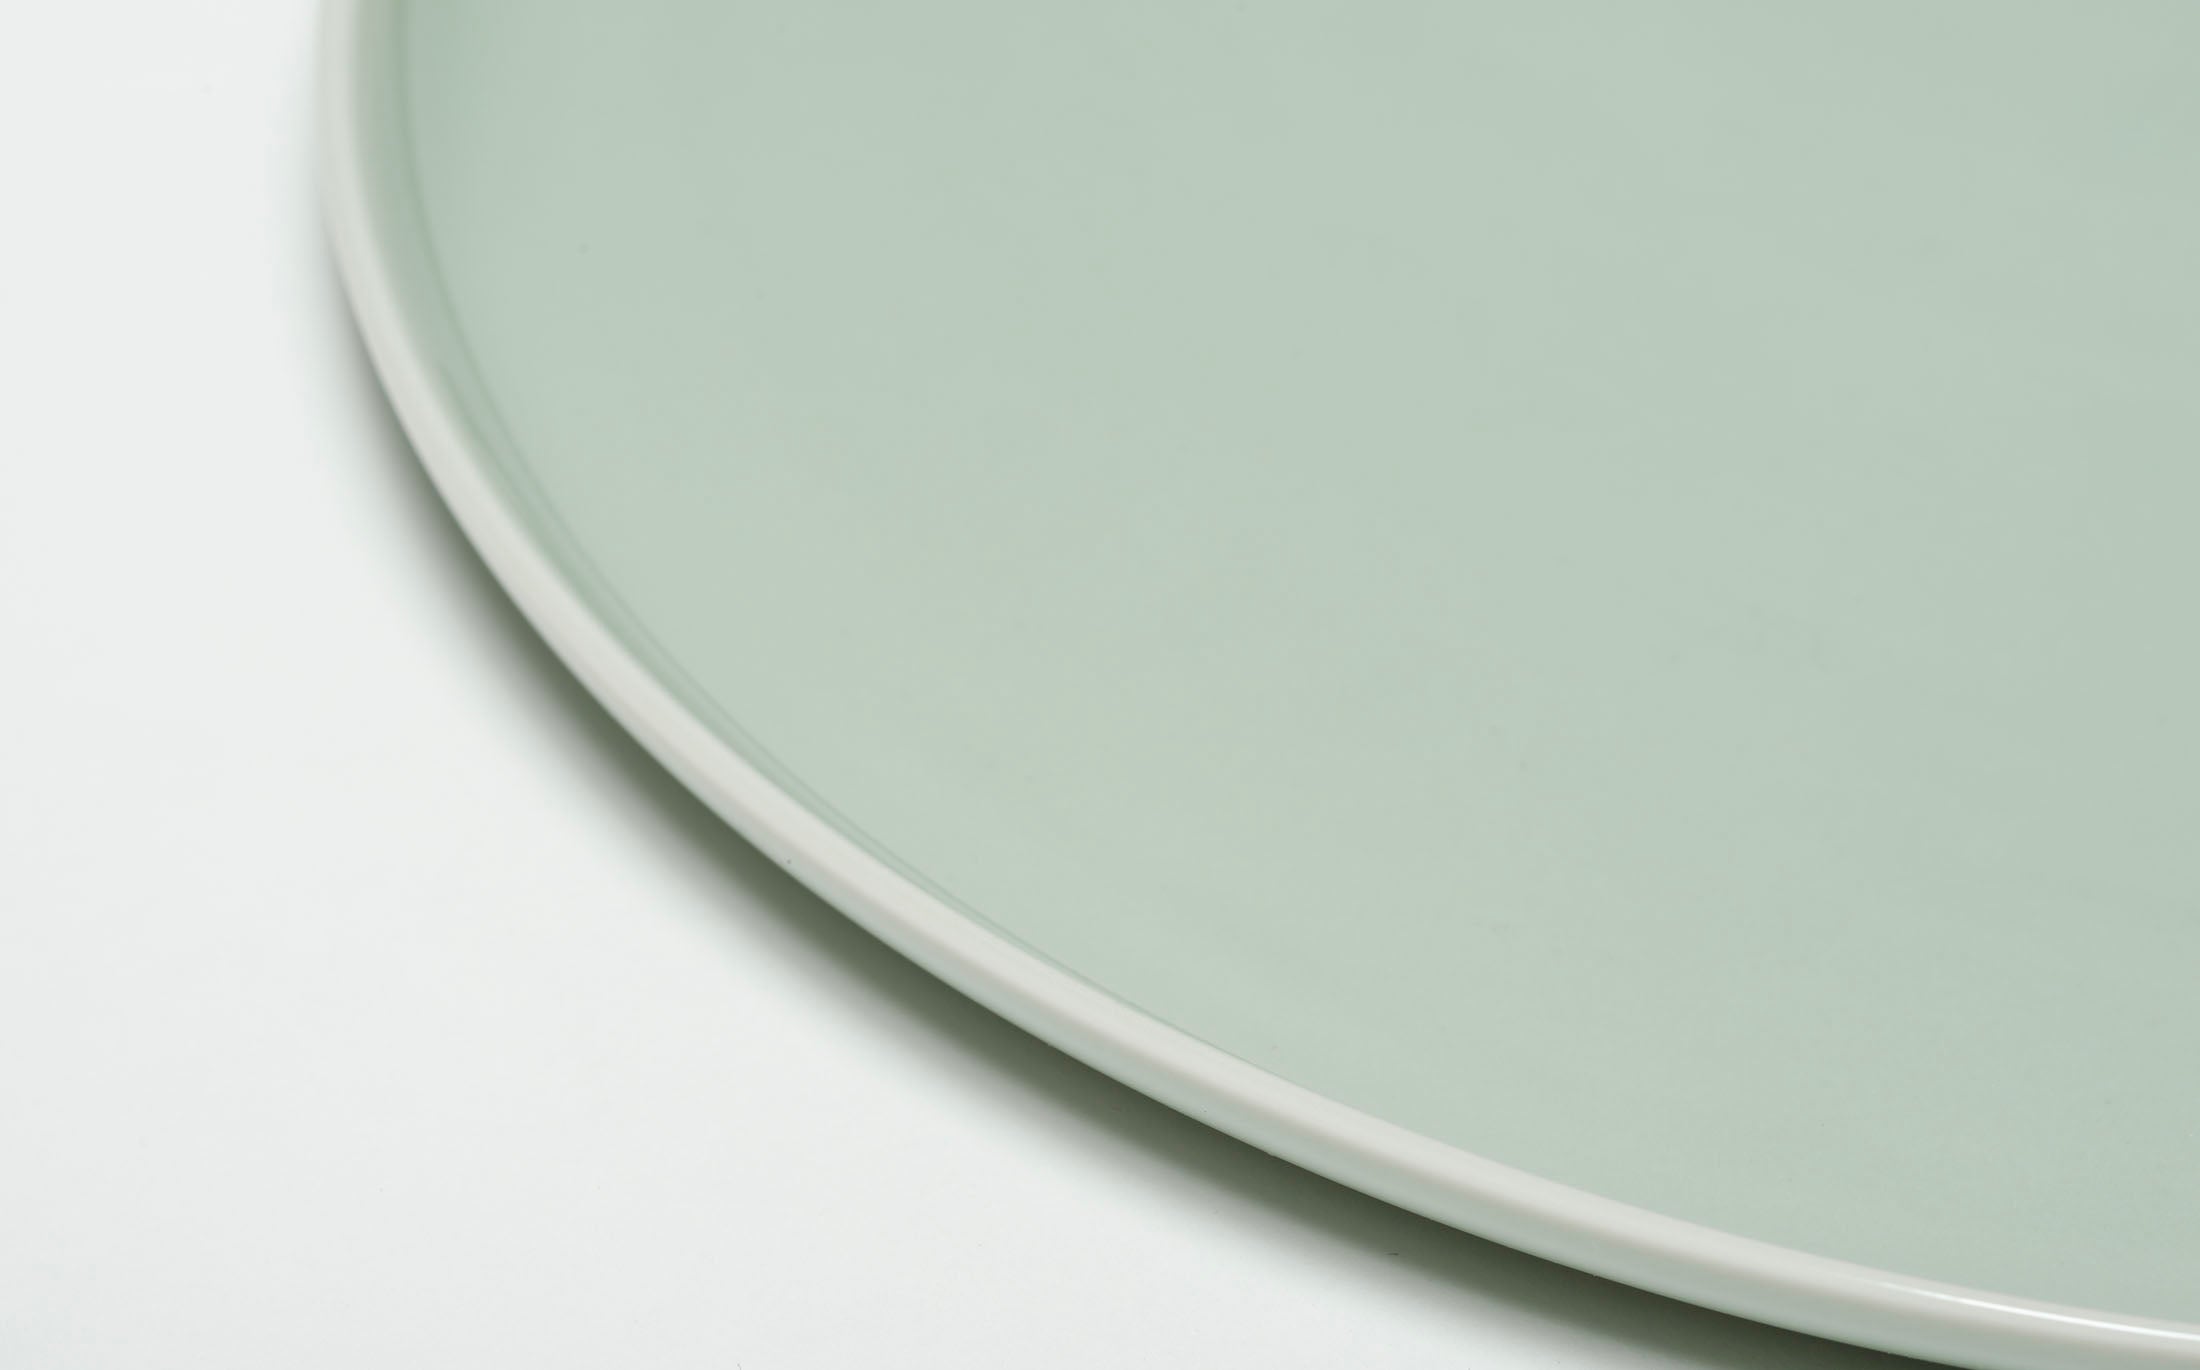 Yamabuki - Porcelain Celadon - Round Plate